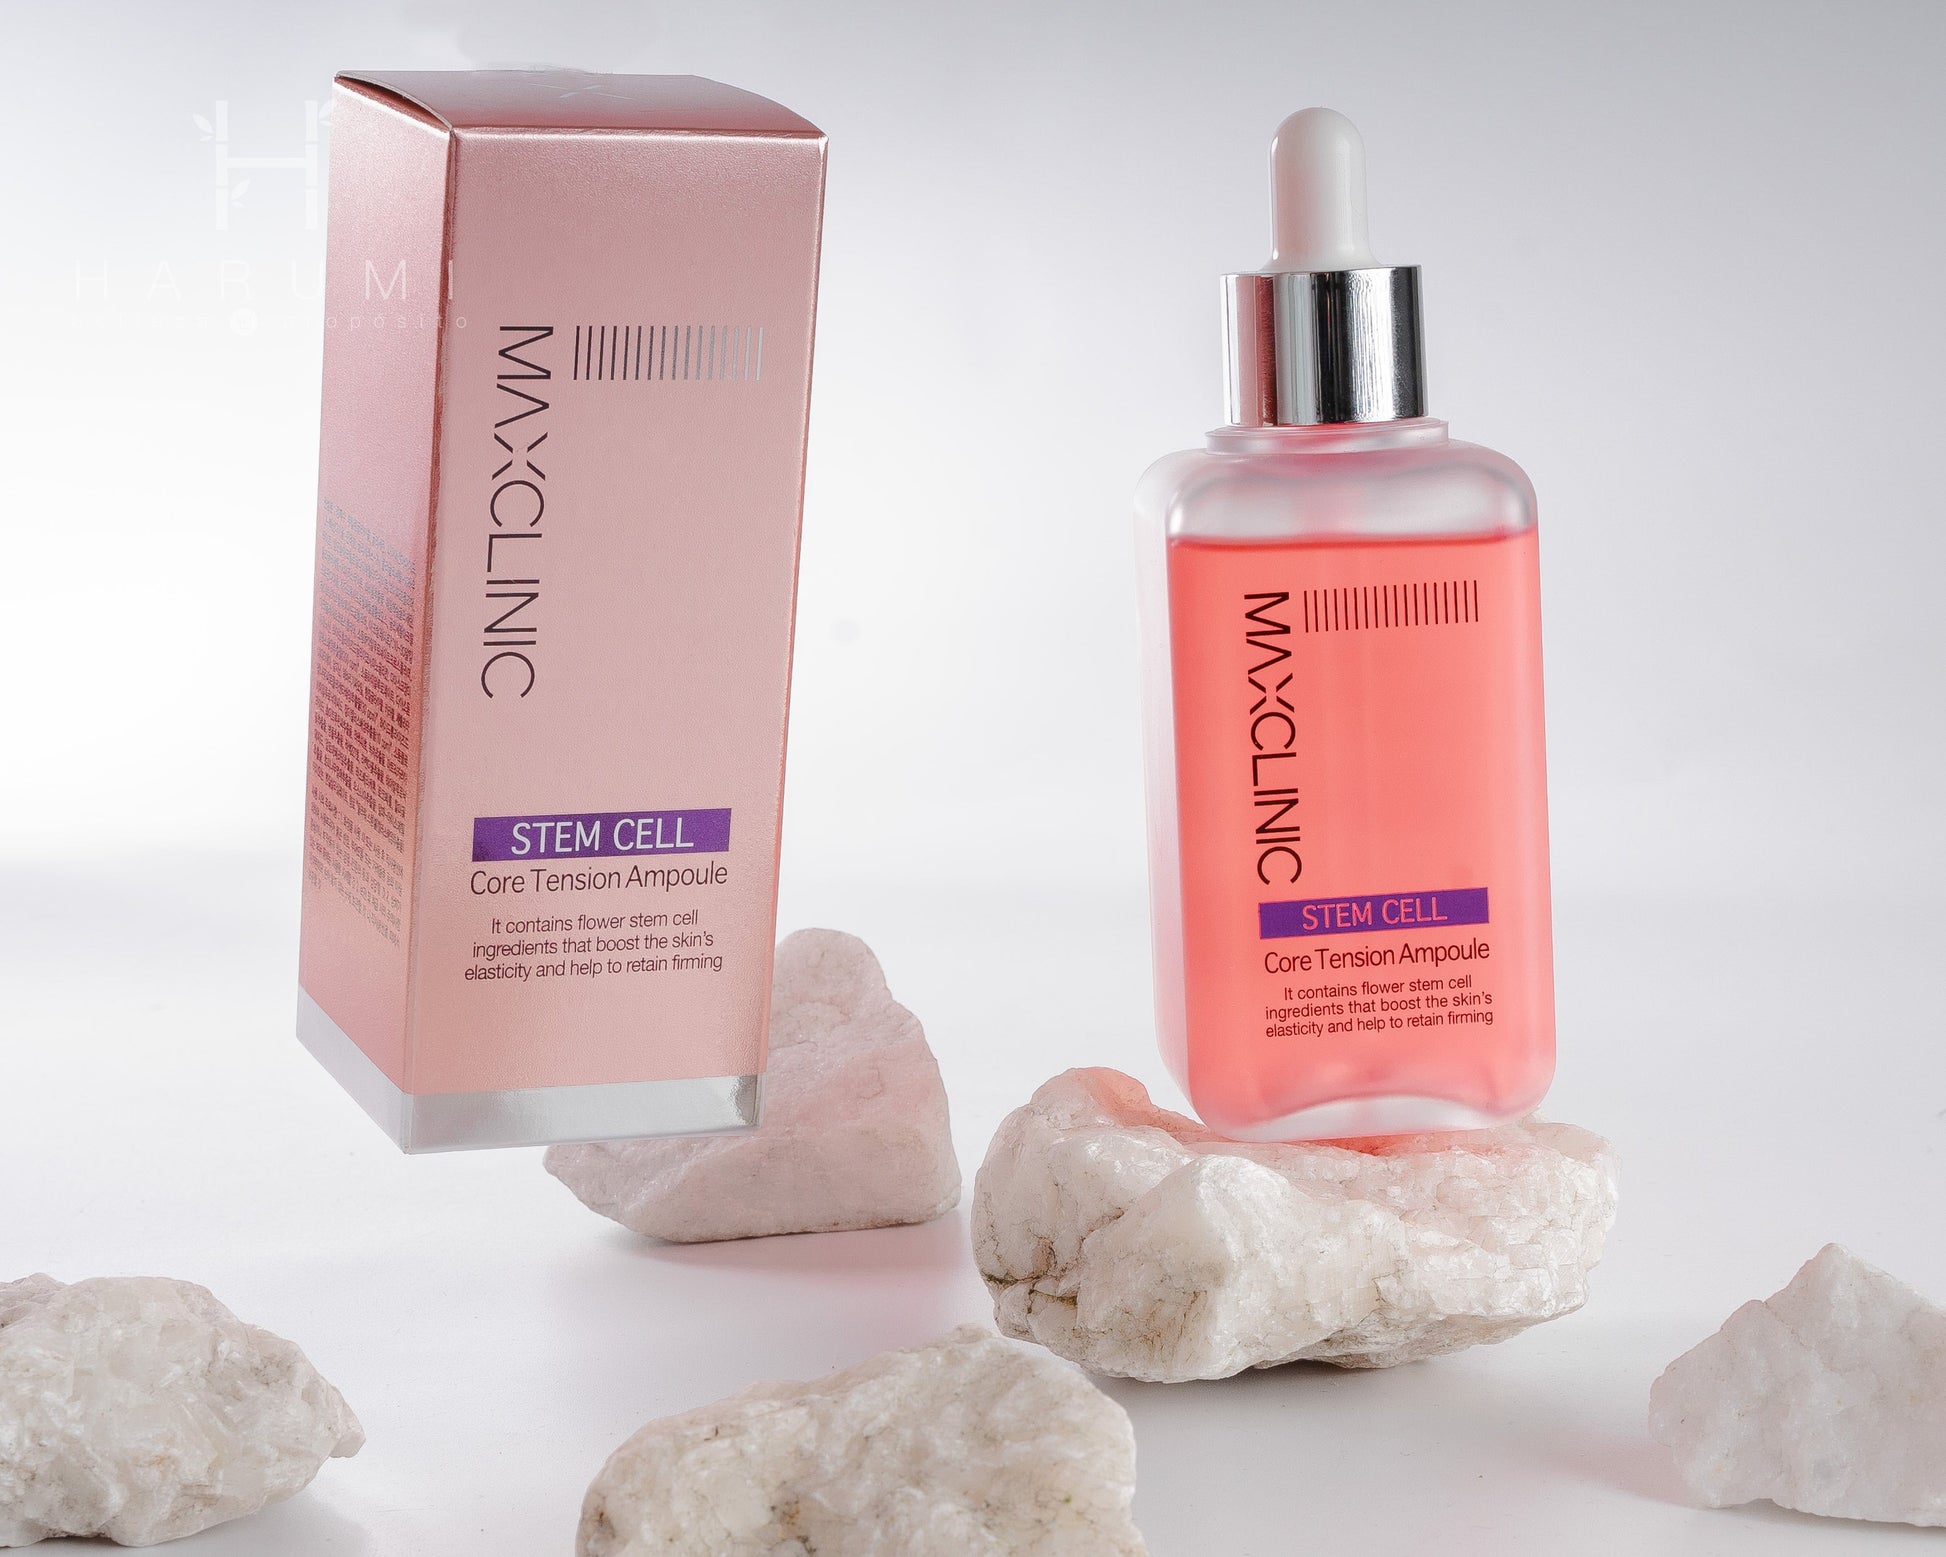 Maxclinic Stem Cell Core Tension Ampoule Skincare maquillaje productos de belleza coreanos en Colombia kbeauty